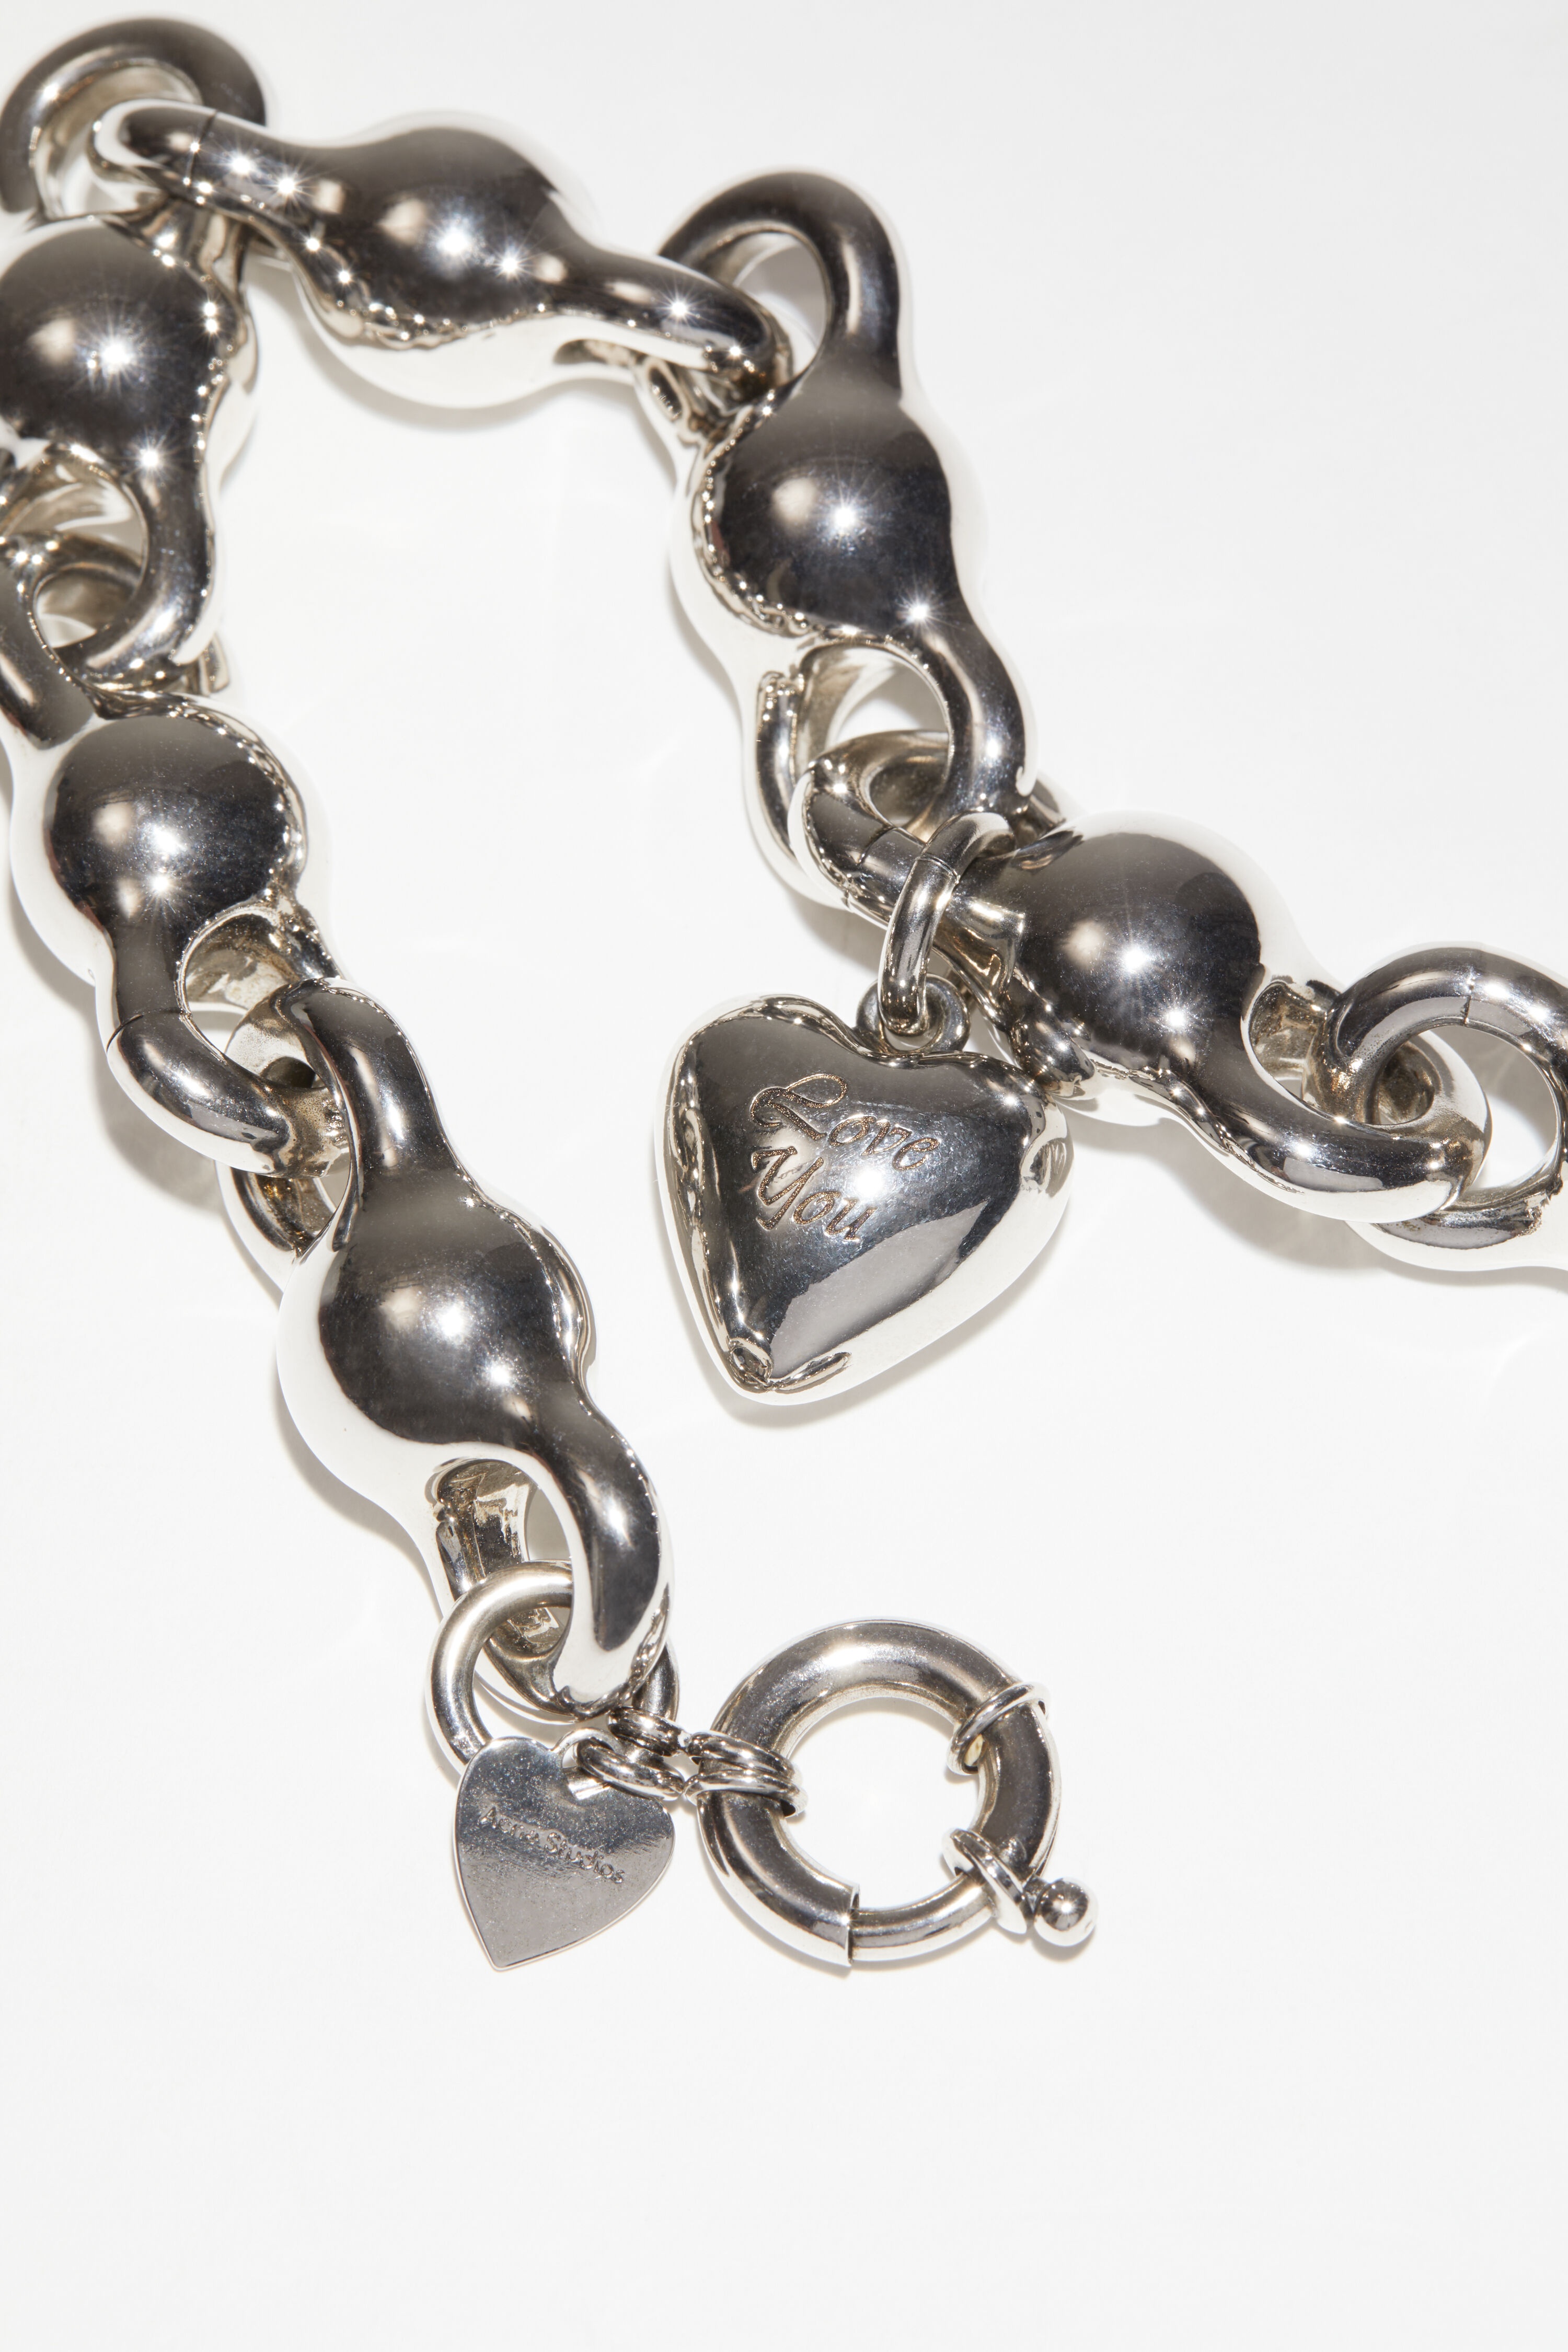 Acne Studios Women's Antique Silver Charm Bracelet